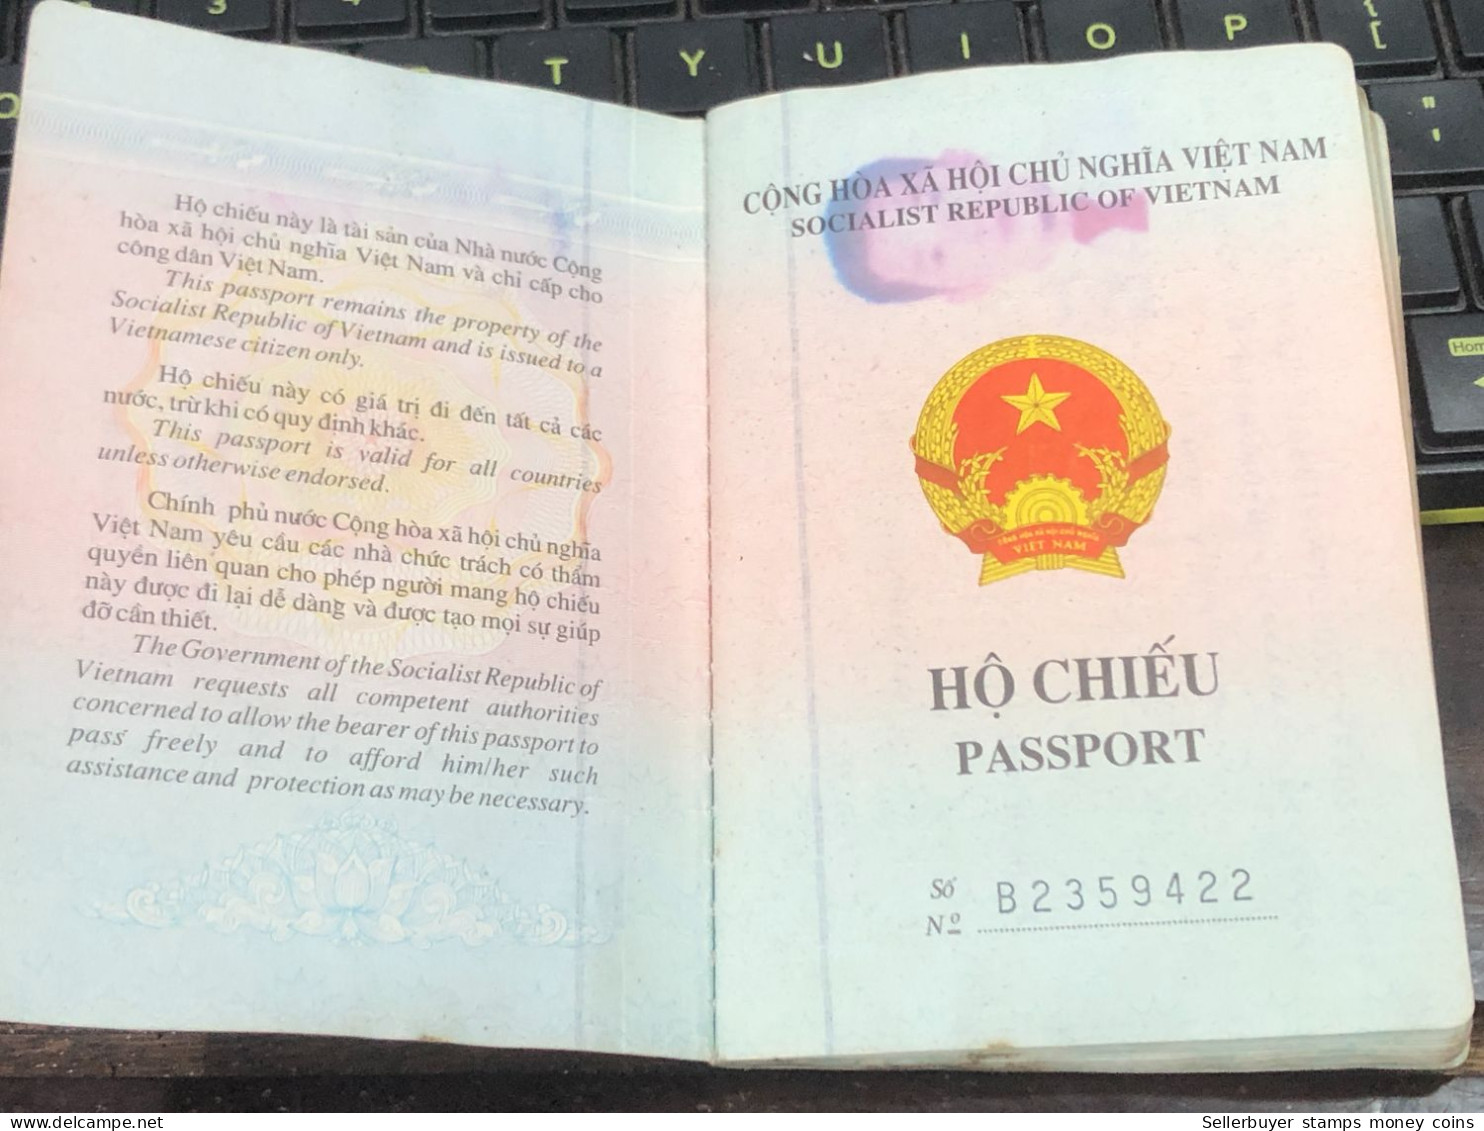 VIET NAMESE-OLD-ID PASSPORT VIET NAM-PASSPORT Is Still Good-name-luu Van Minh Hoang-2008-1pcs Book - Sammlungen